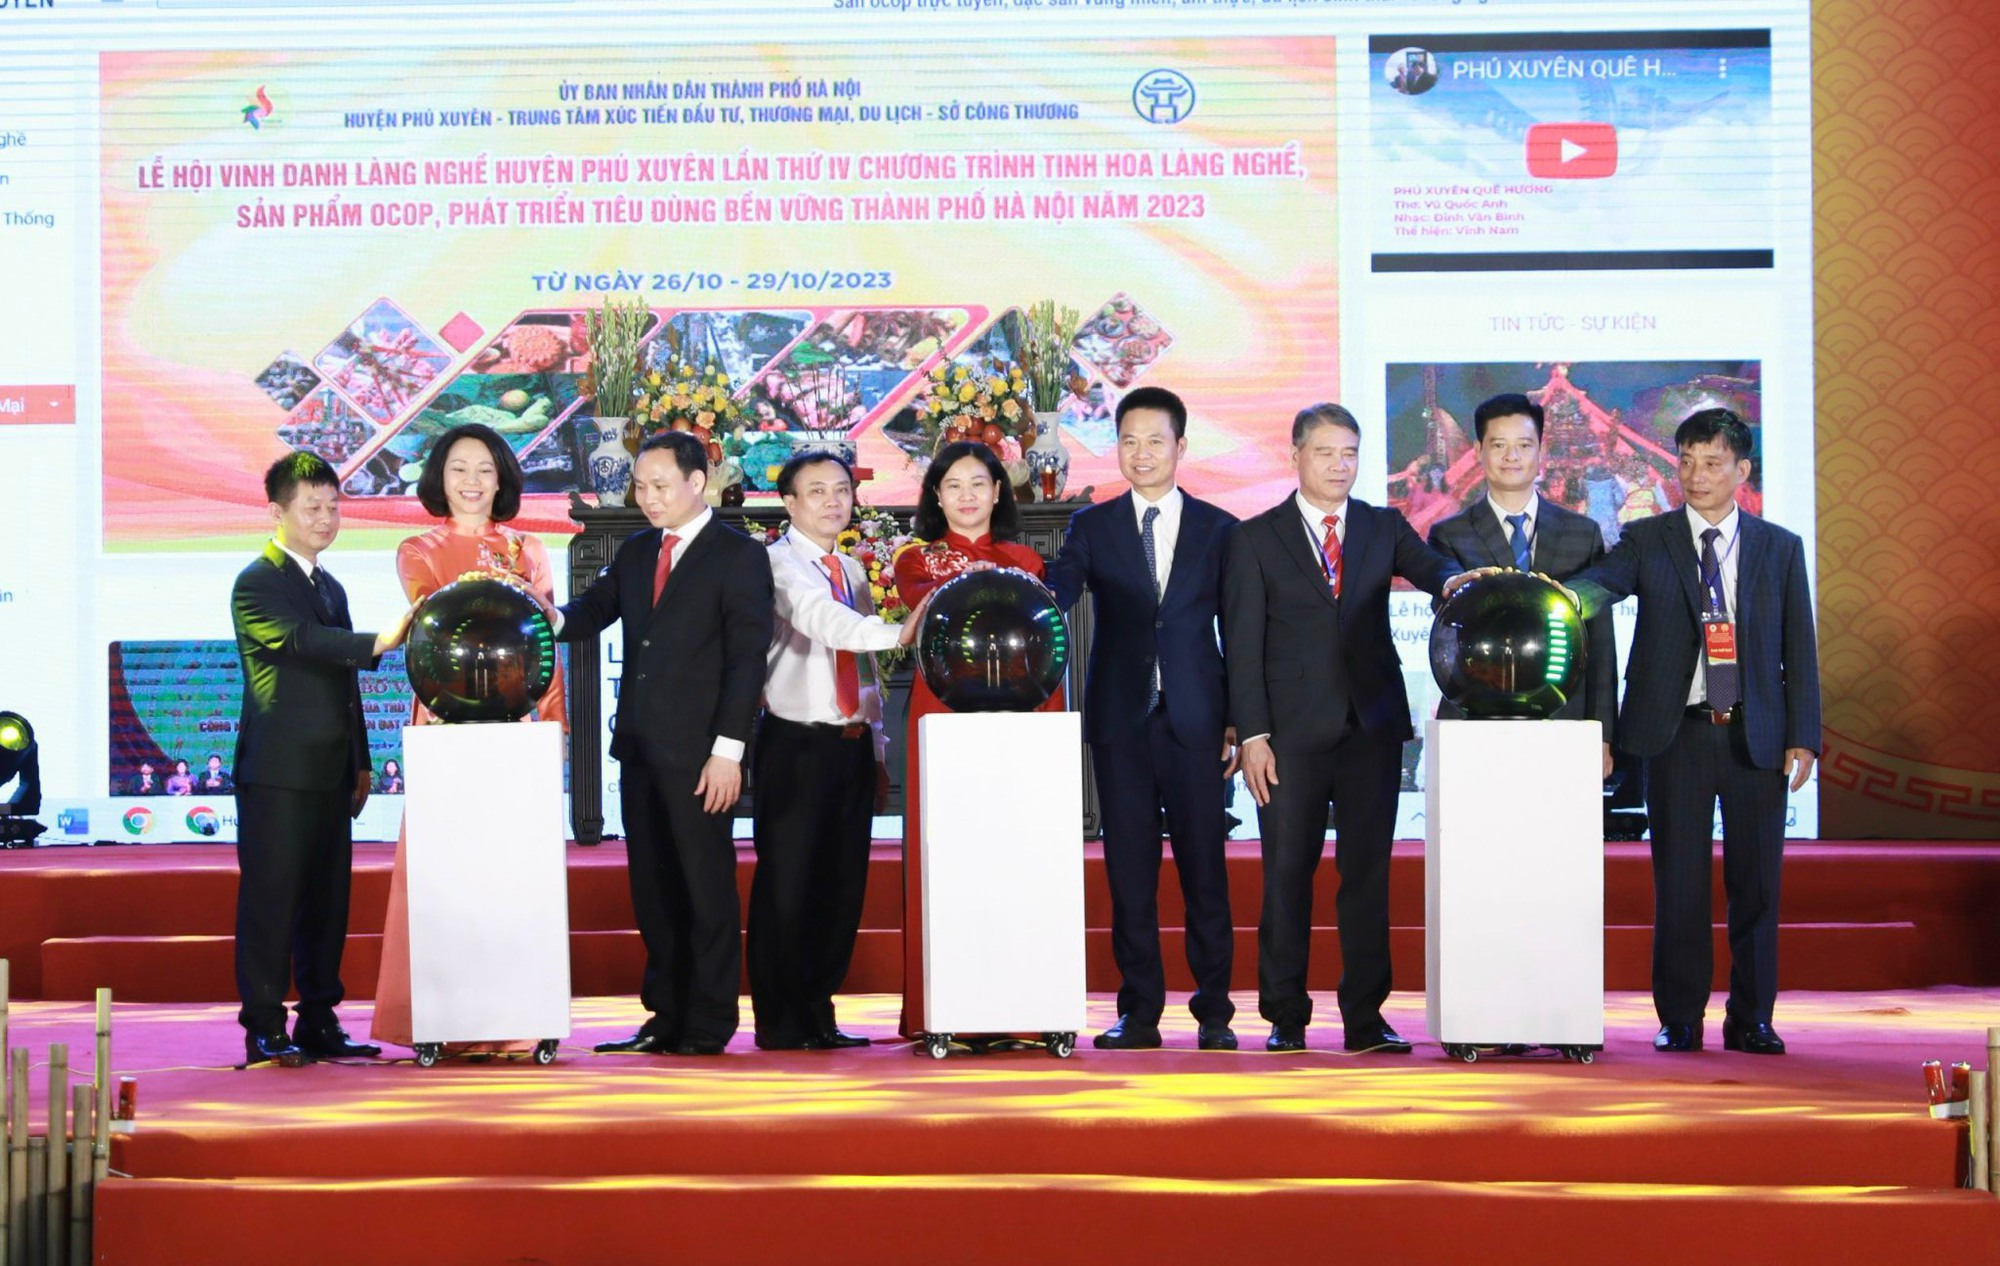 Hà Nội: 100 doanh nghiệp, 220 gian hàng tham gia Lễ hội vinh danh làng nghề huyện Phú Xuyên lần thứ IV năm 2023 - Ảnh 5.